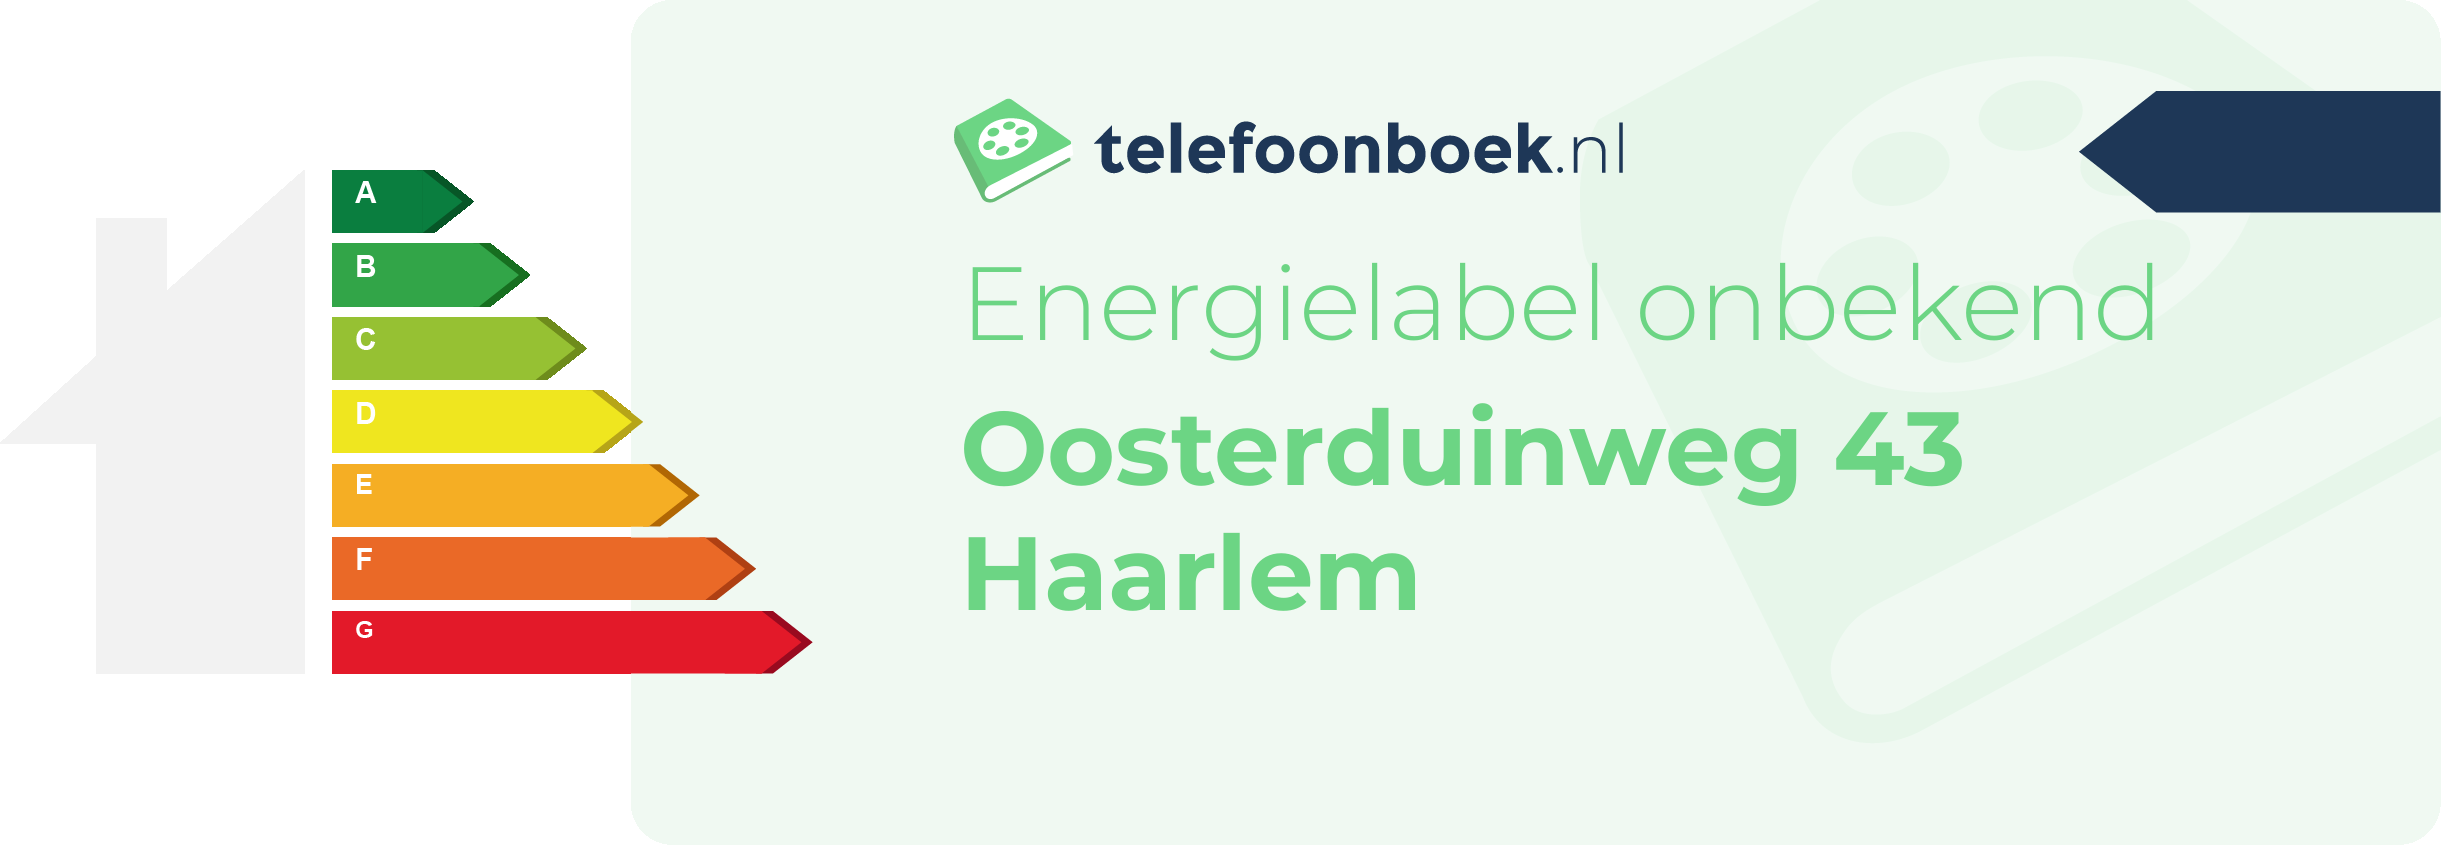 Energielabel Oosterduinweg 43 Haarlem